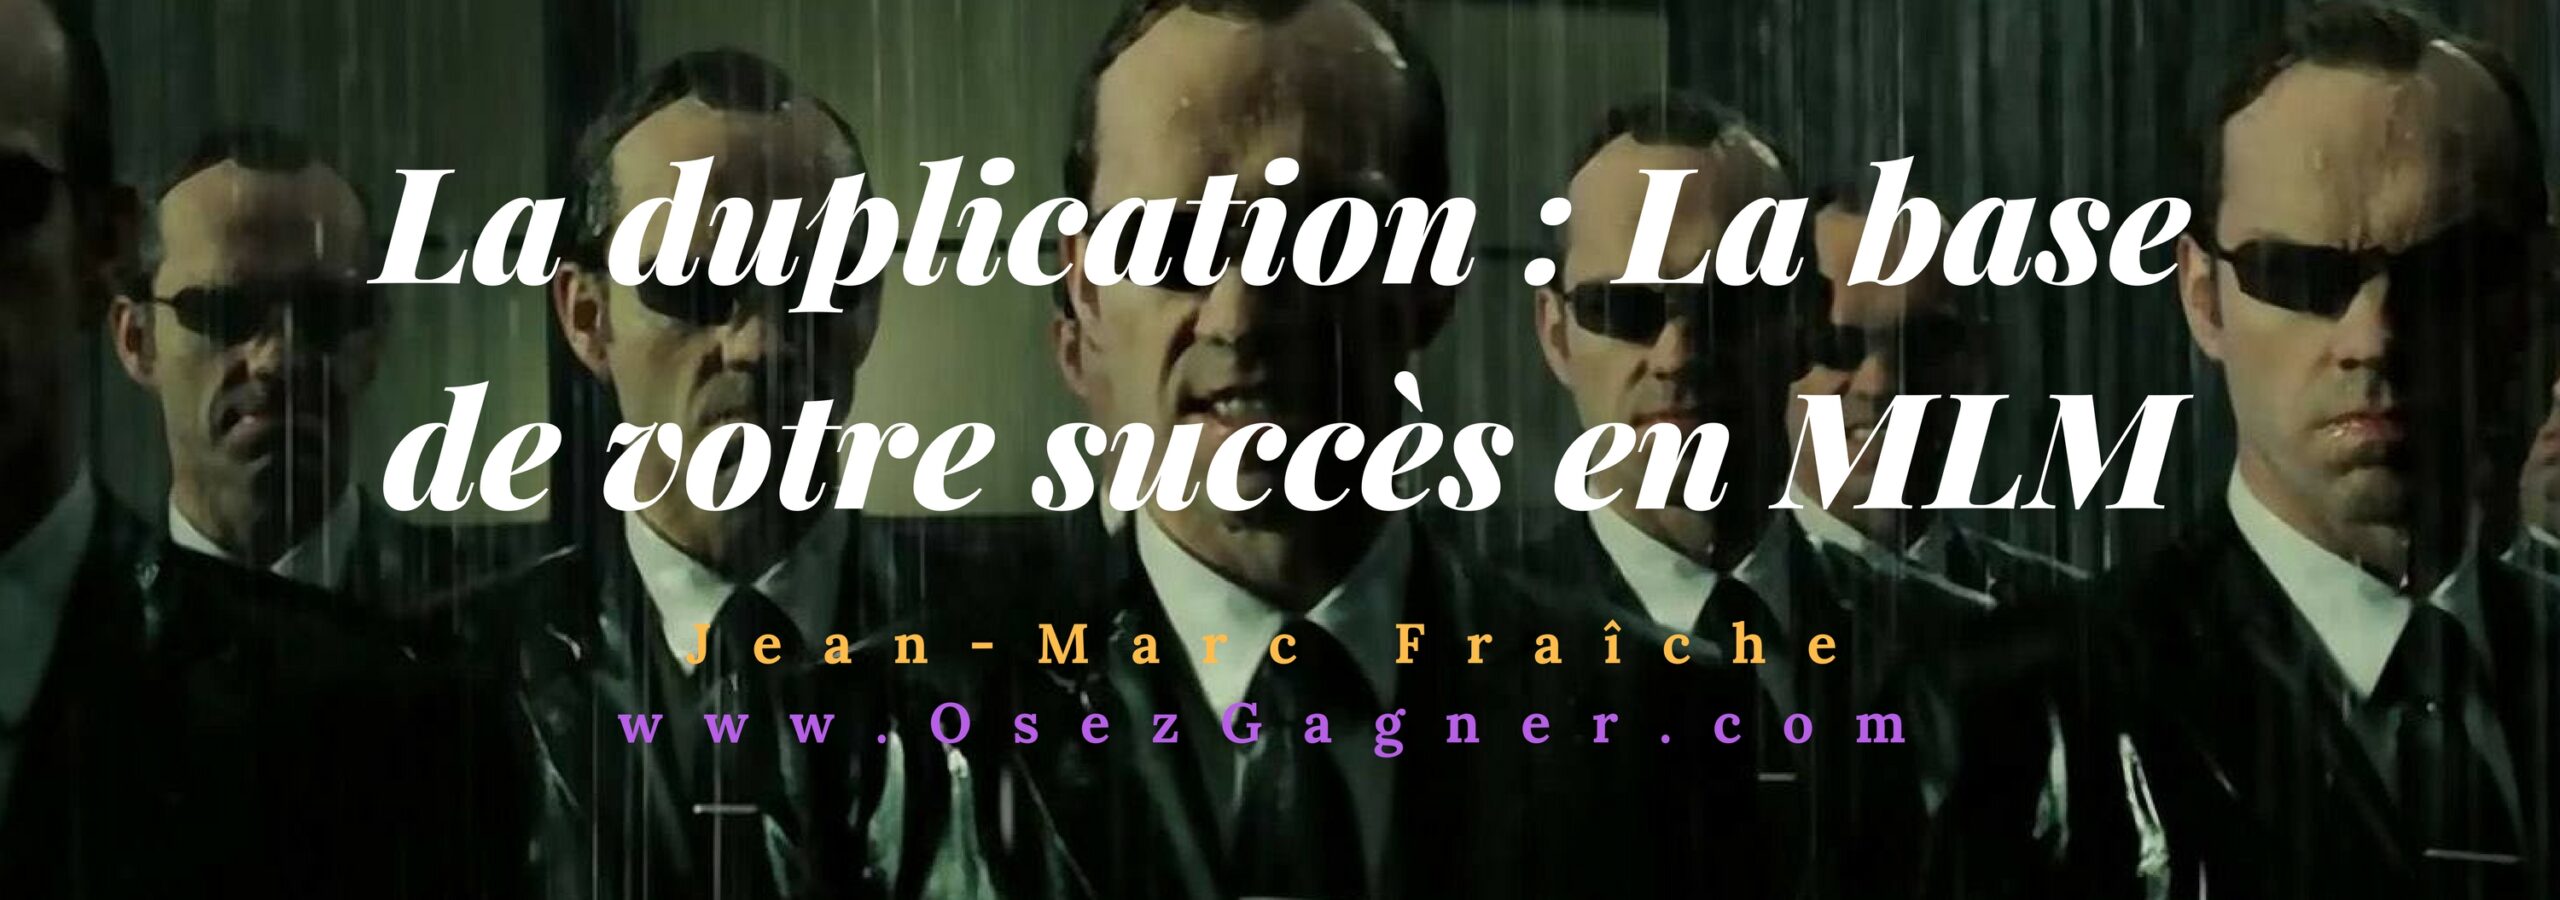 La duplication : la base de votre succès en MLMLa-Base-de-votre-succes-en-MLM-Jean-Marc-Fraiche